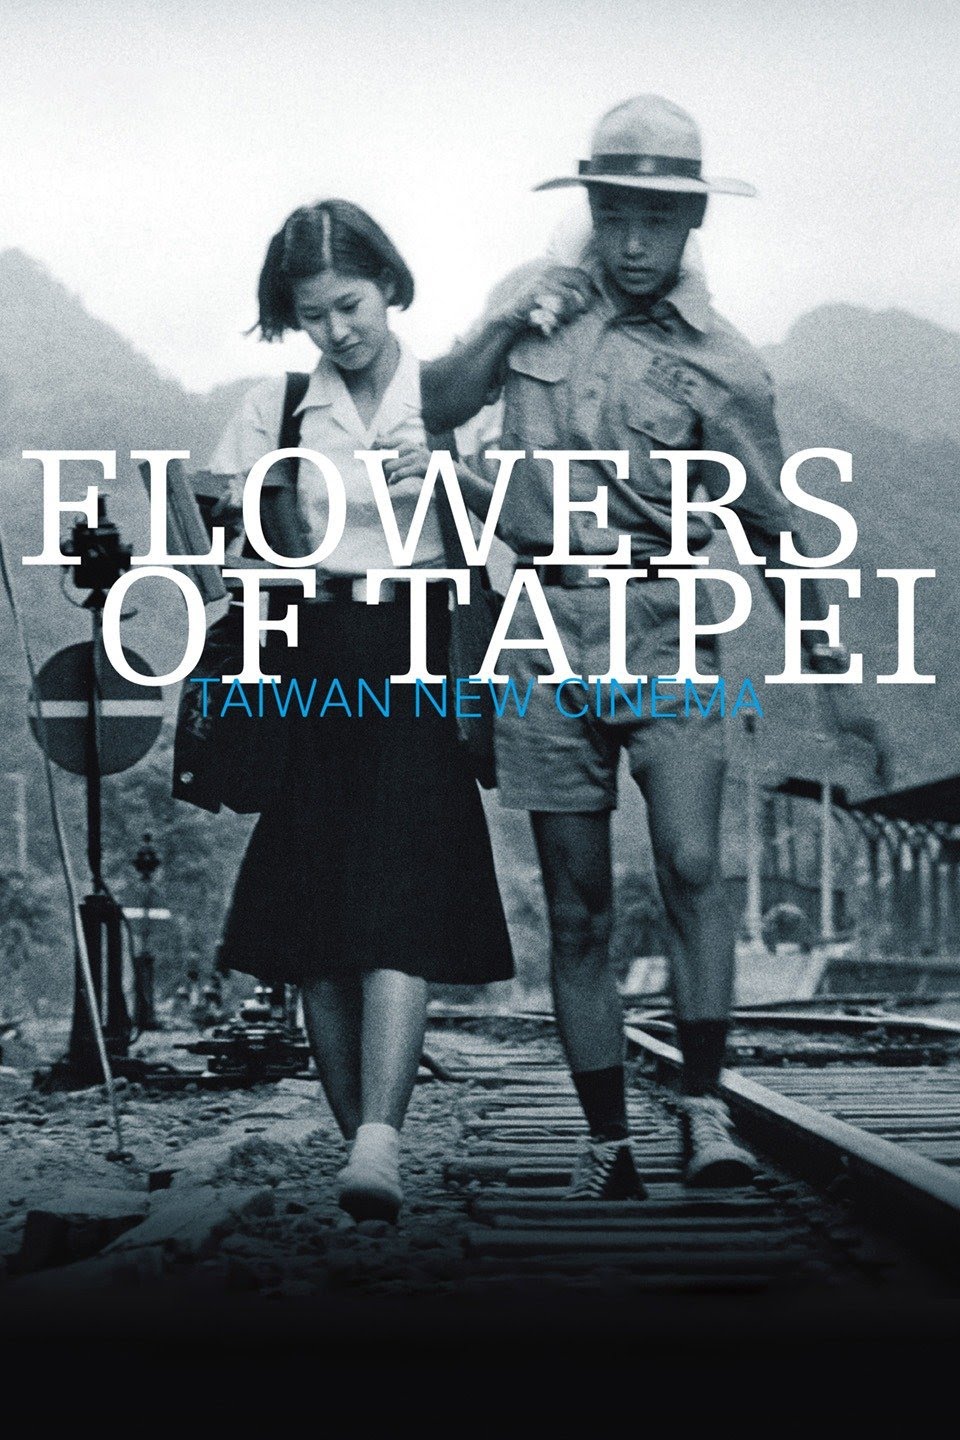 Flowers of Taipei - Taiwan New Cinema